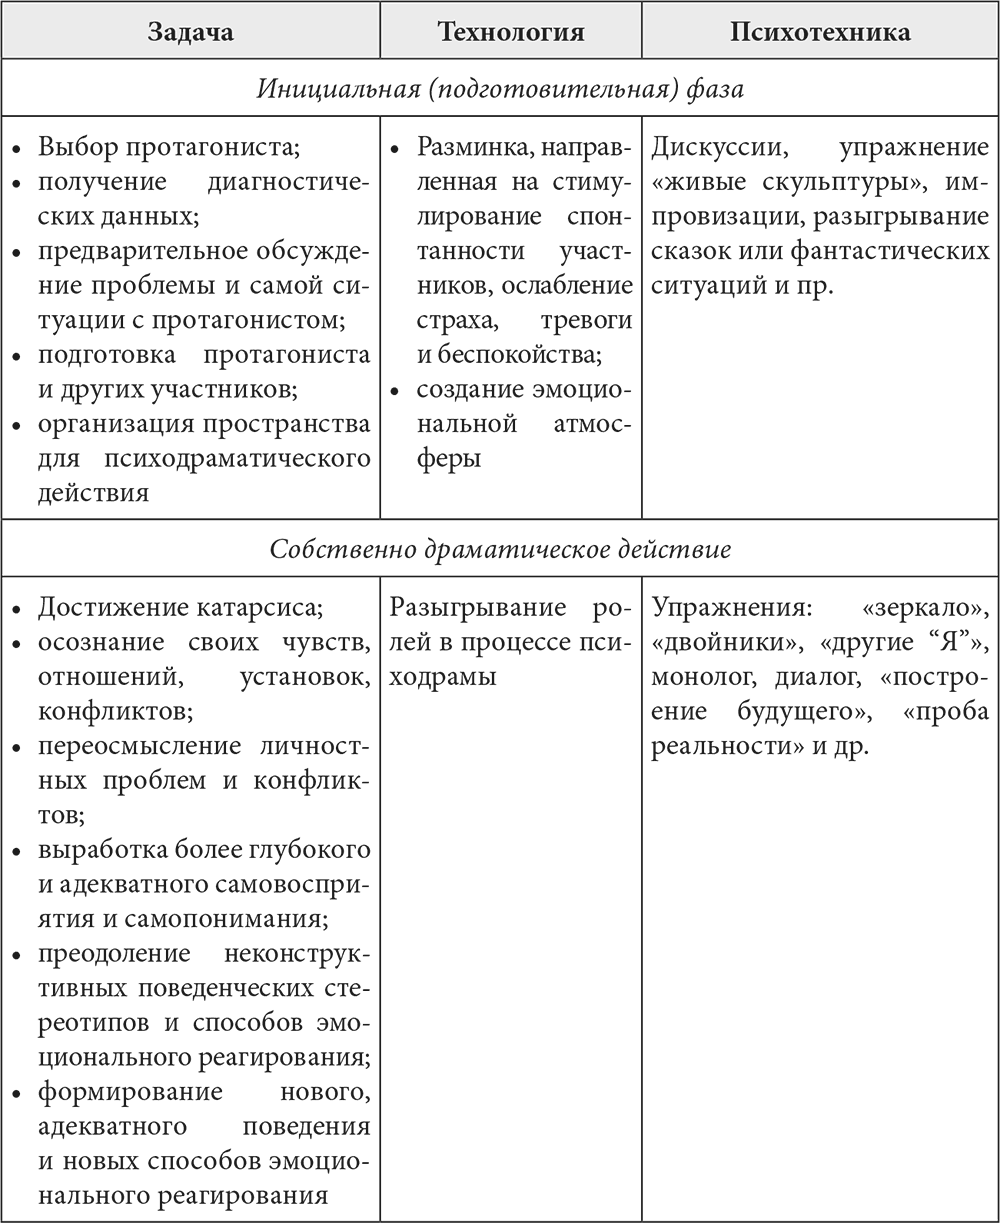 Методы психологической коррекции таблица